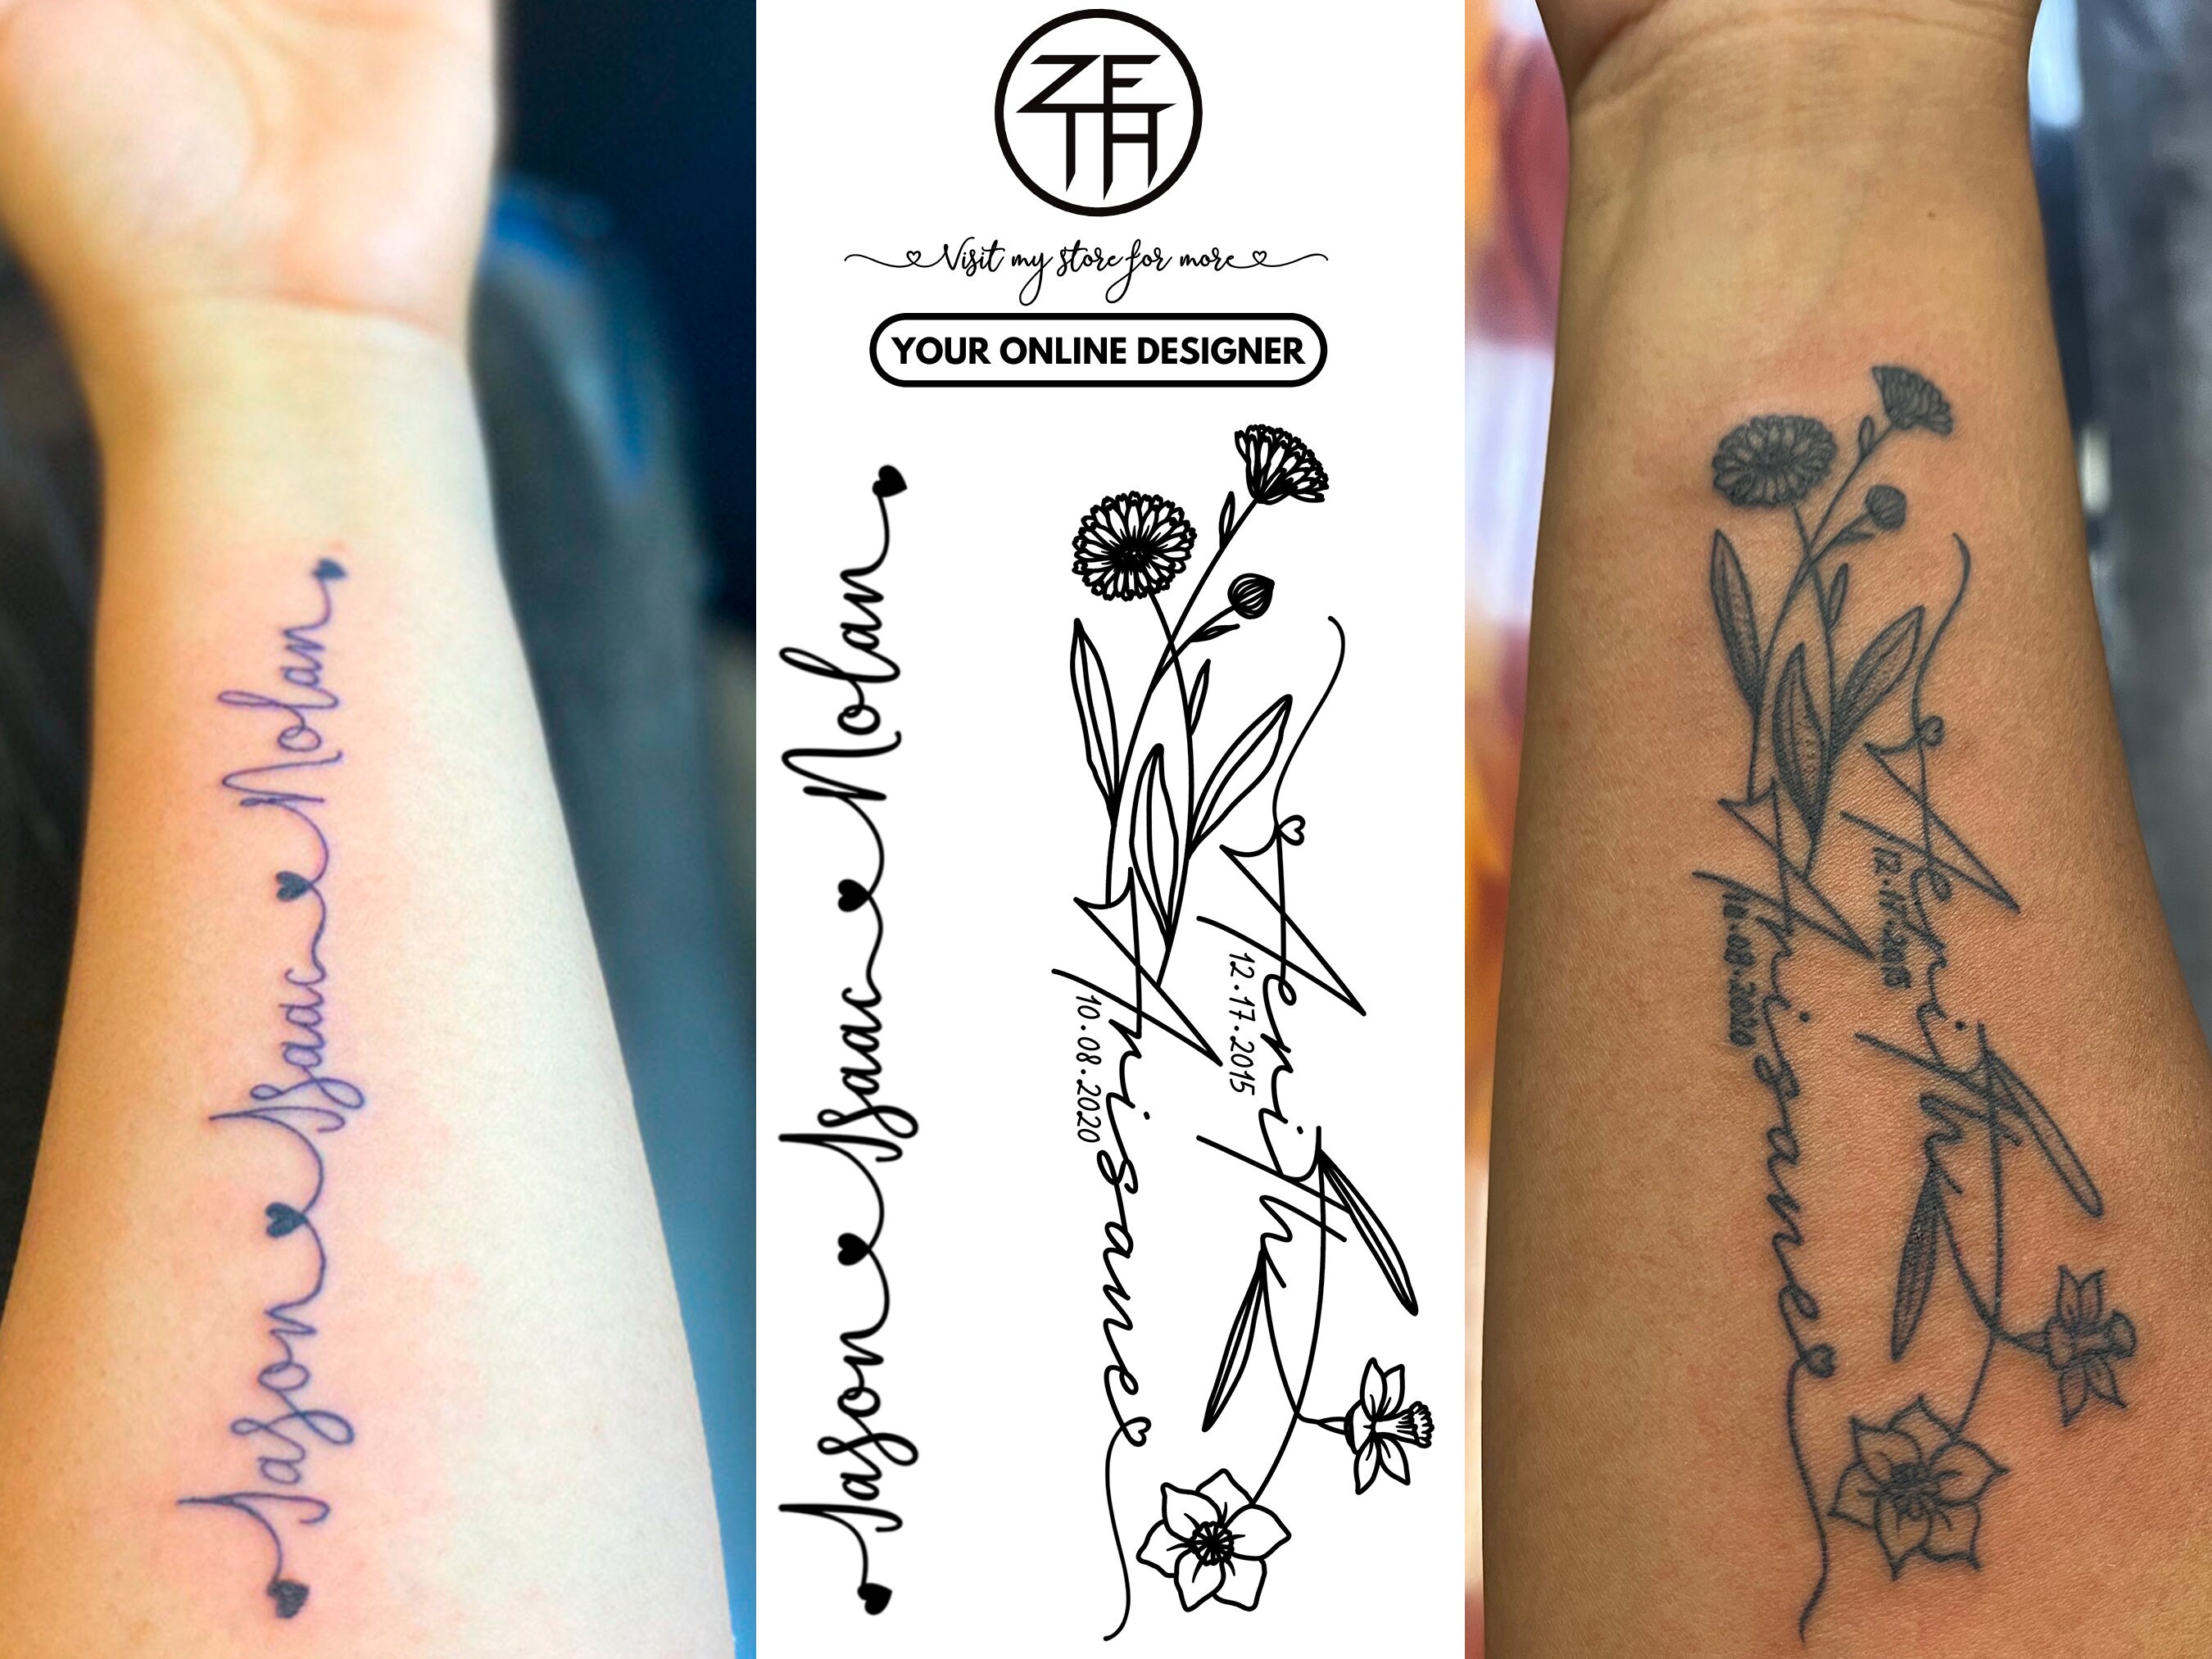 Custom Tattoo Commission Tattoo Design for Women Tattoo - Etsy